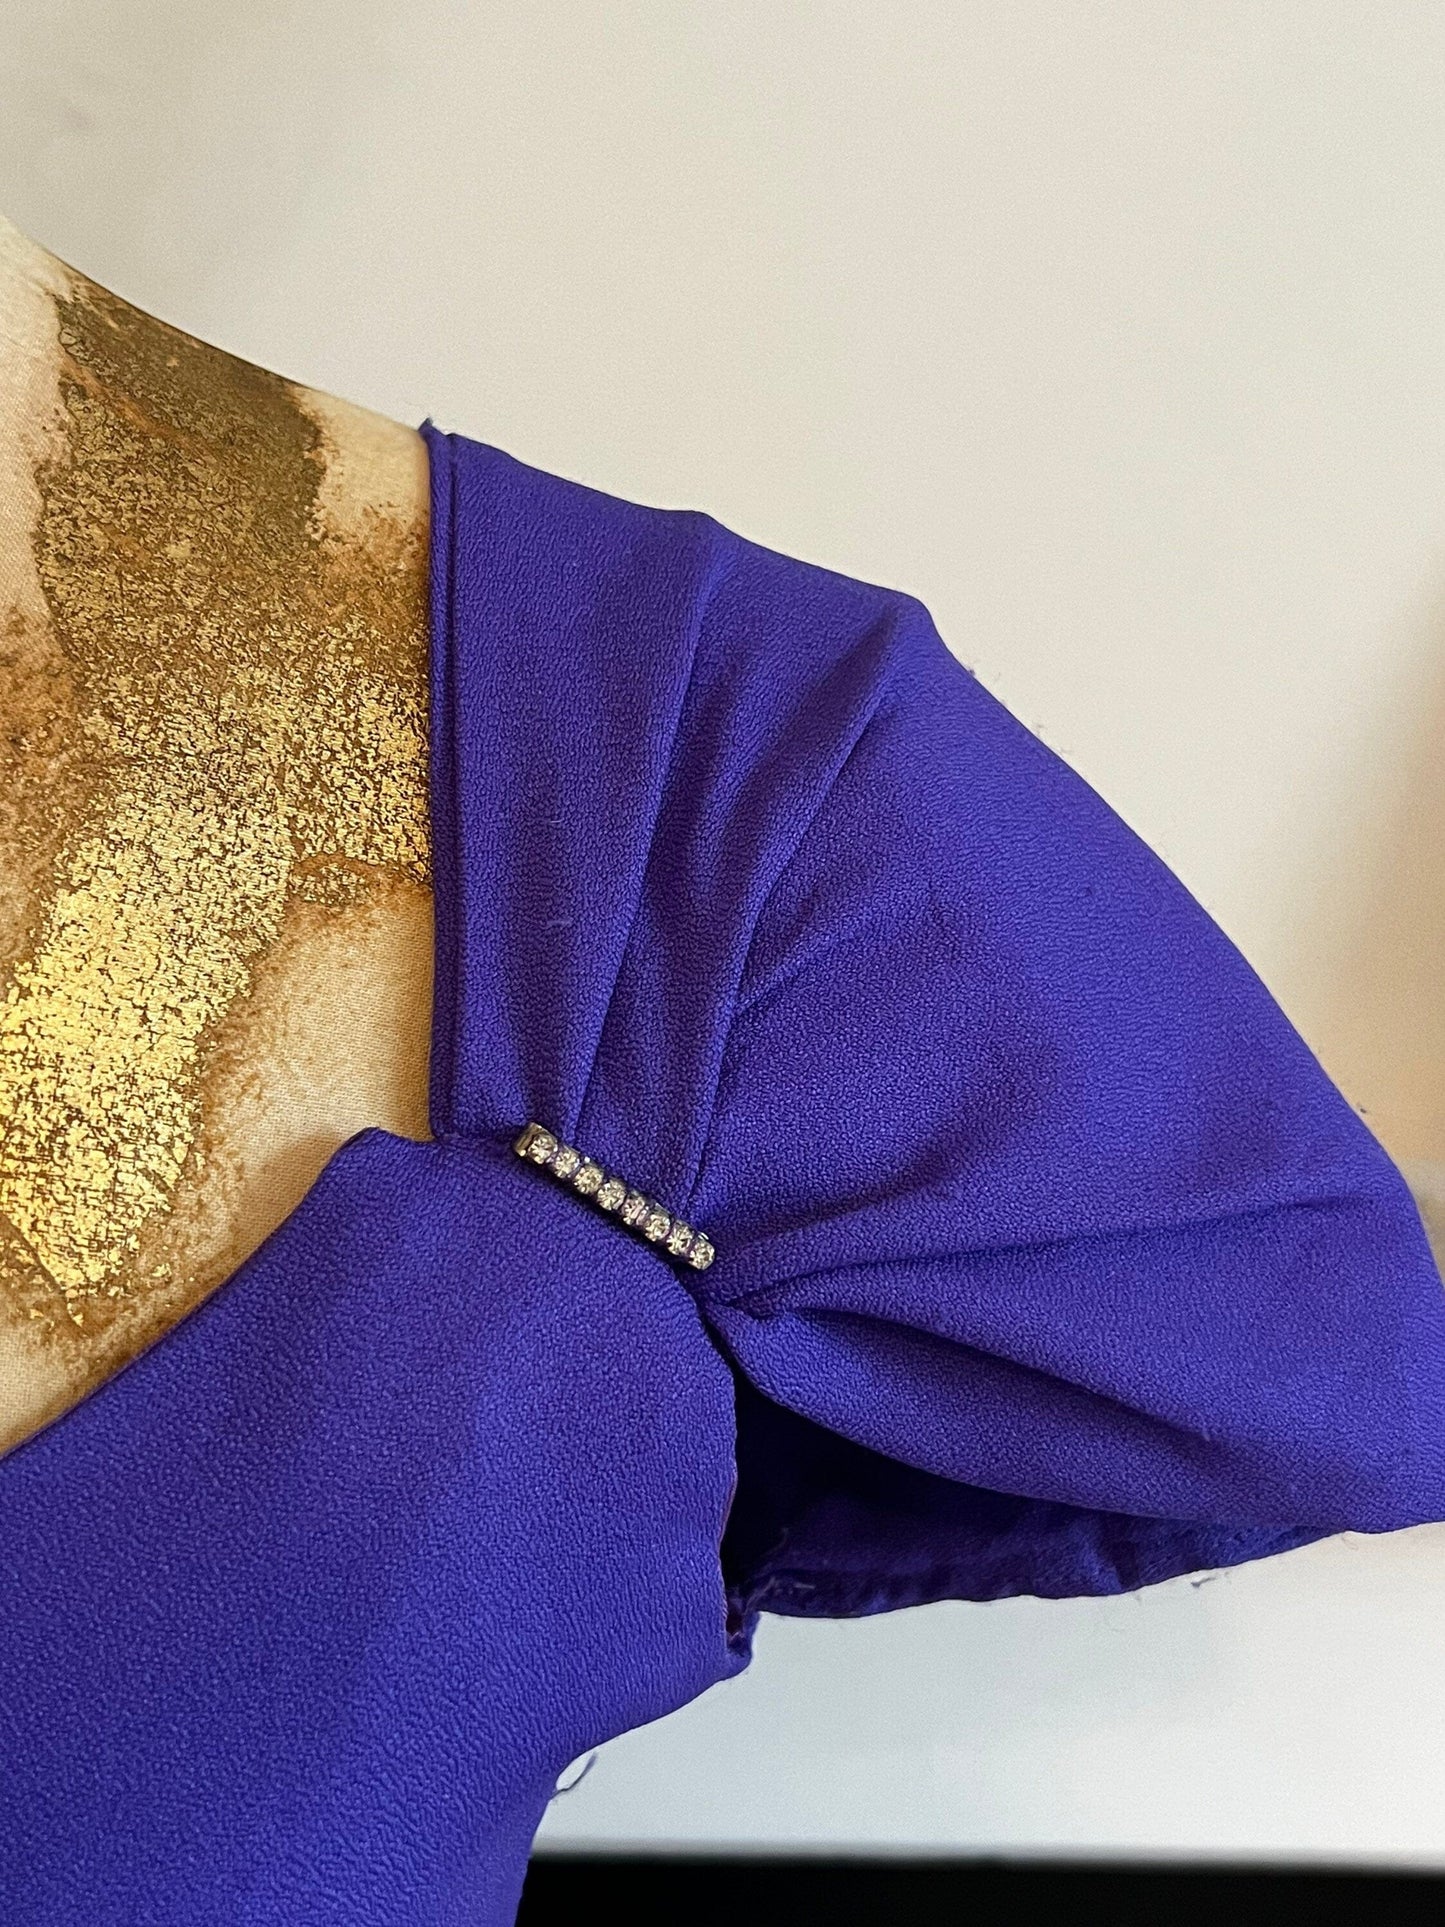 Vintage 80s Purple Dress open back cage design huge shoulder padded cap sleeves UK 6